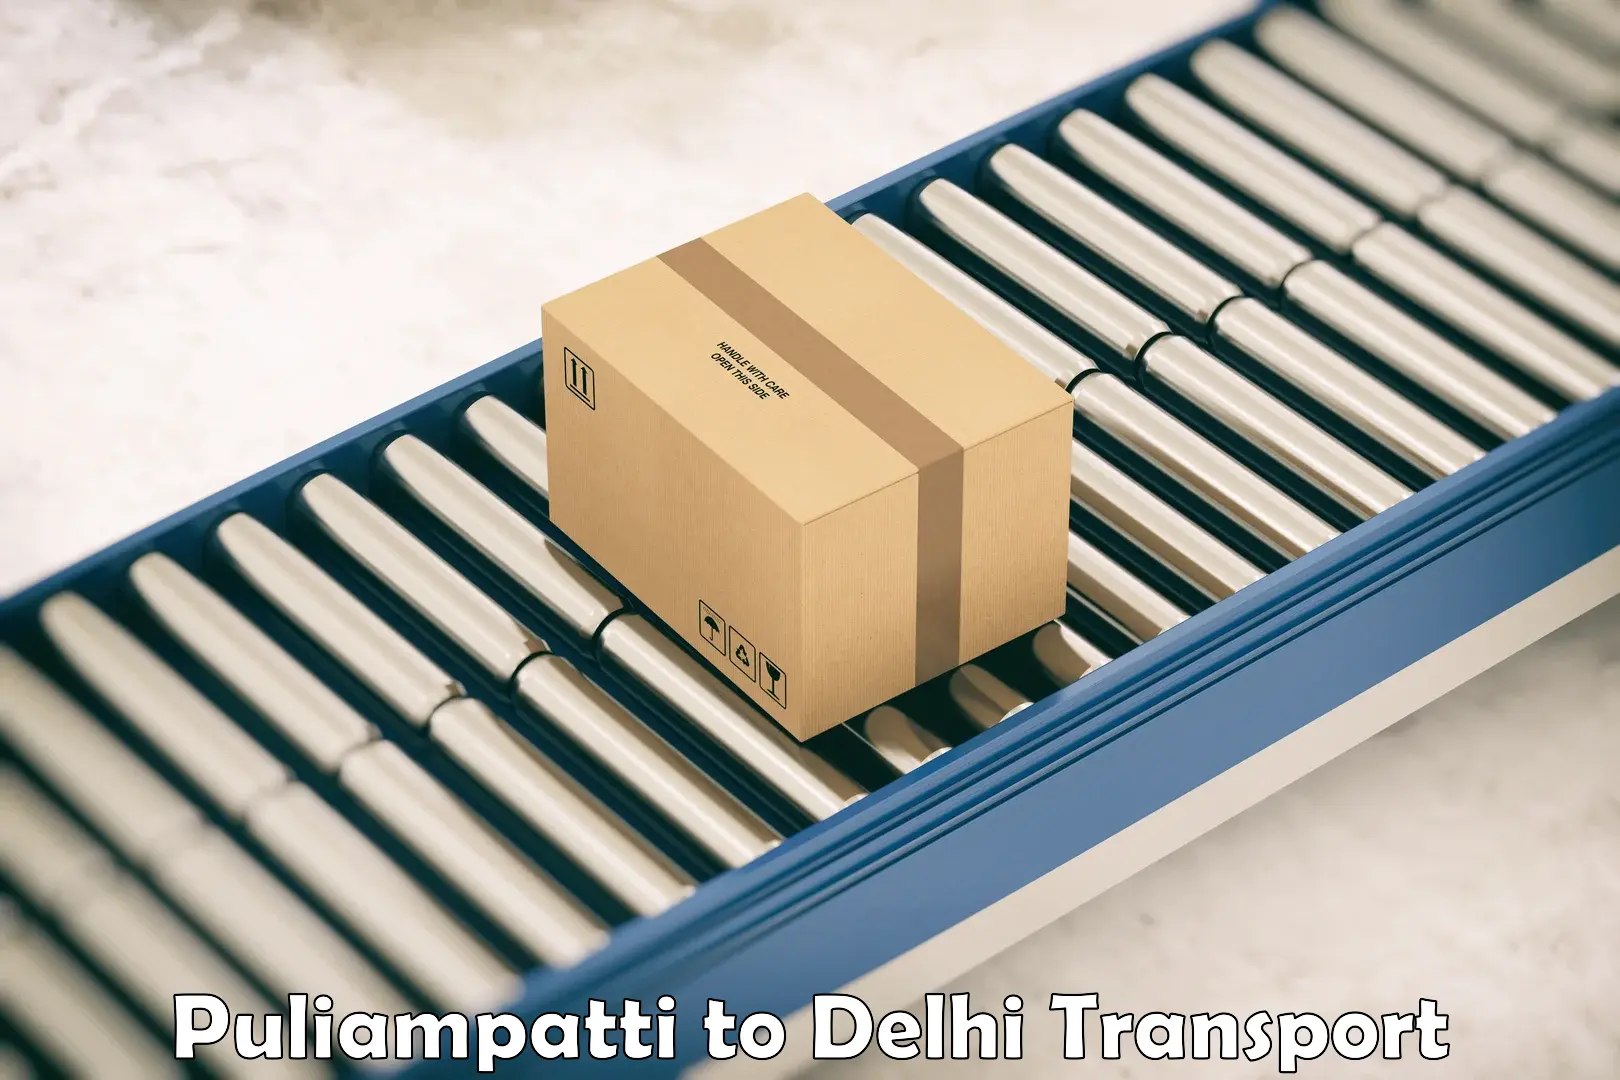 Part load transport service in India Puliampatti to Delhi